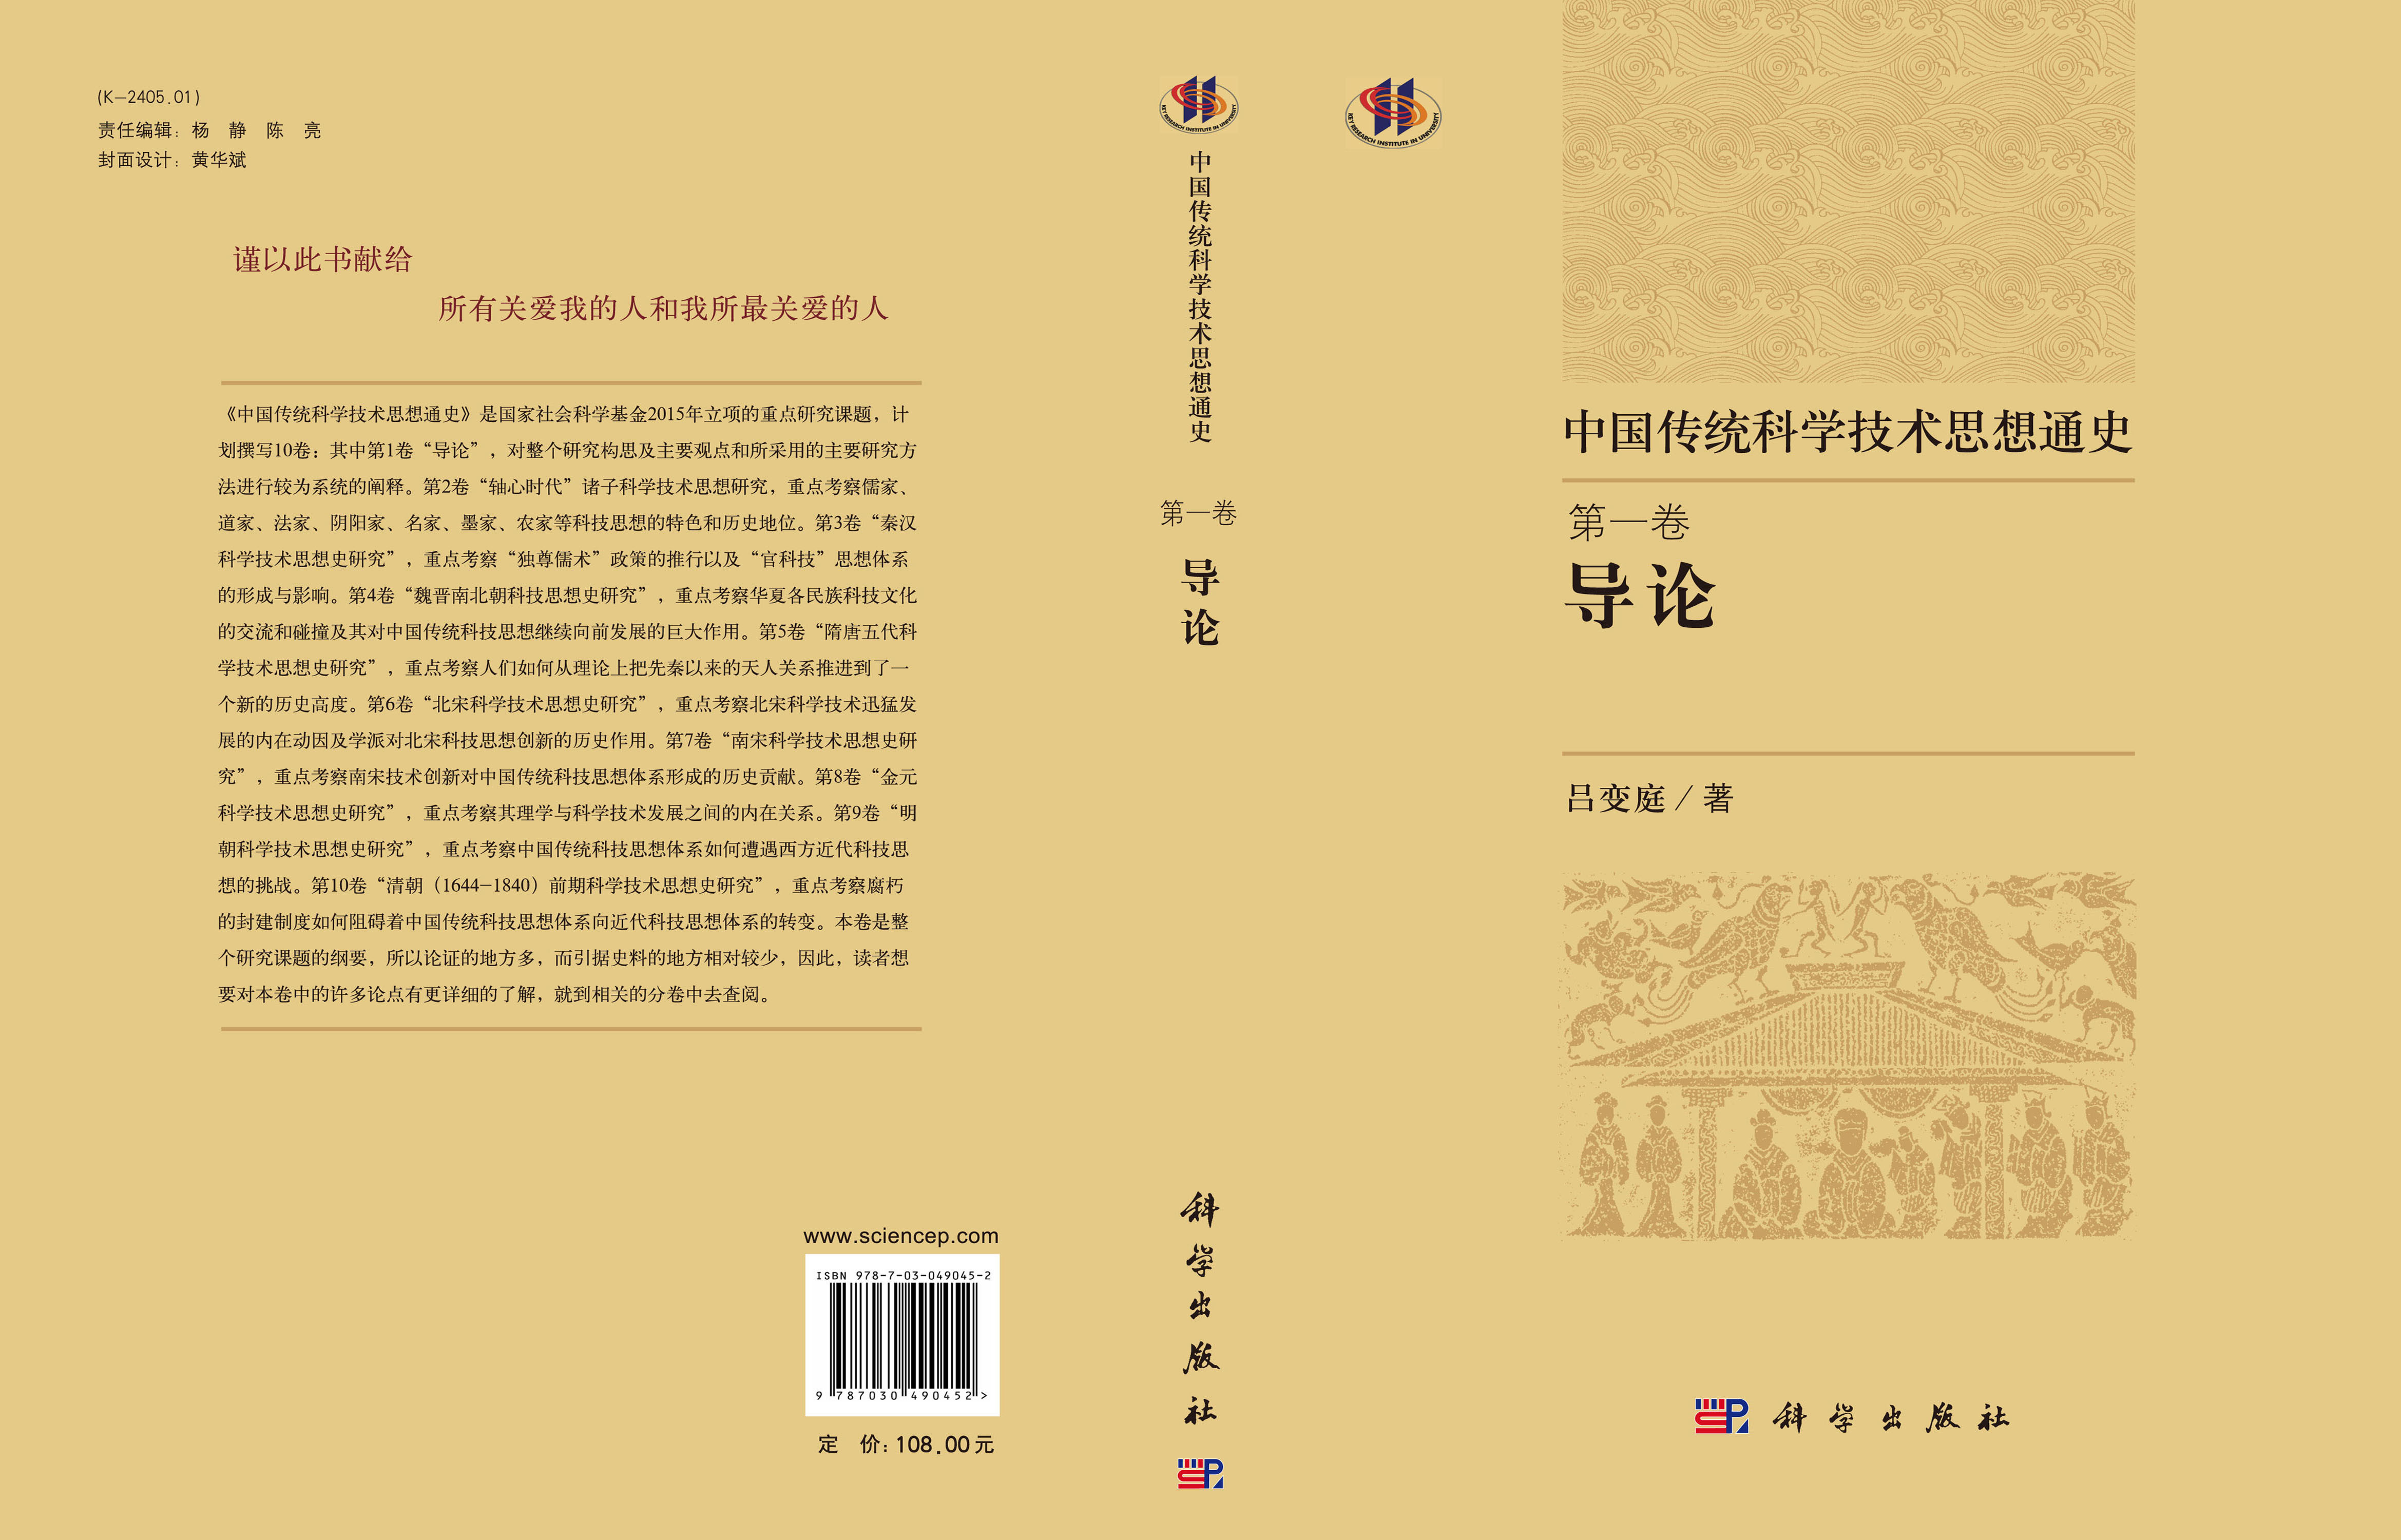 中国科学技术思想通史第一卷导论